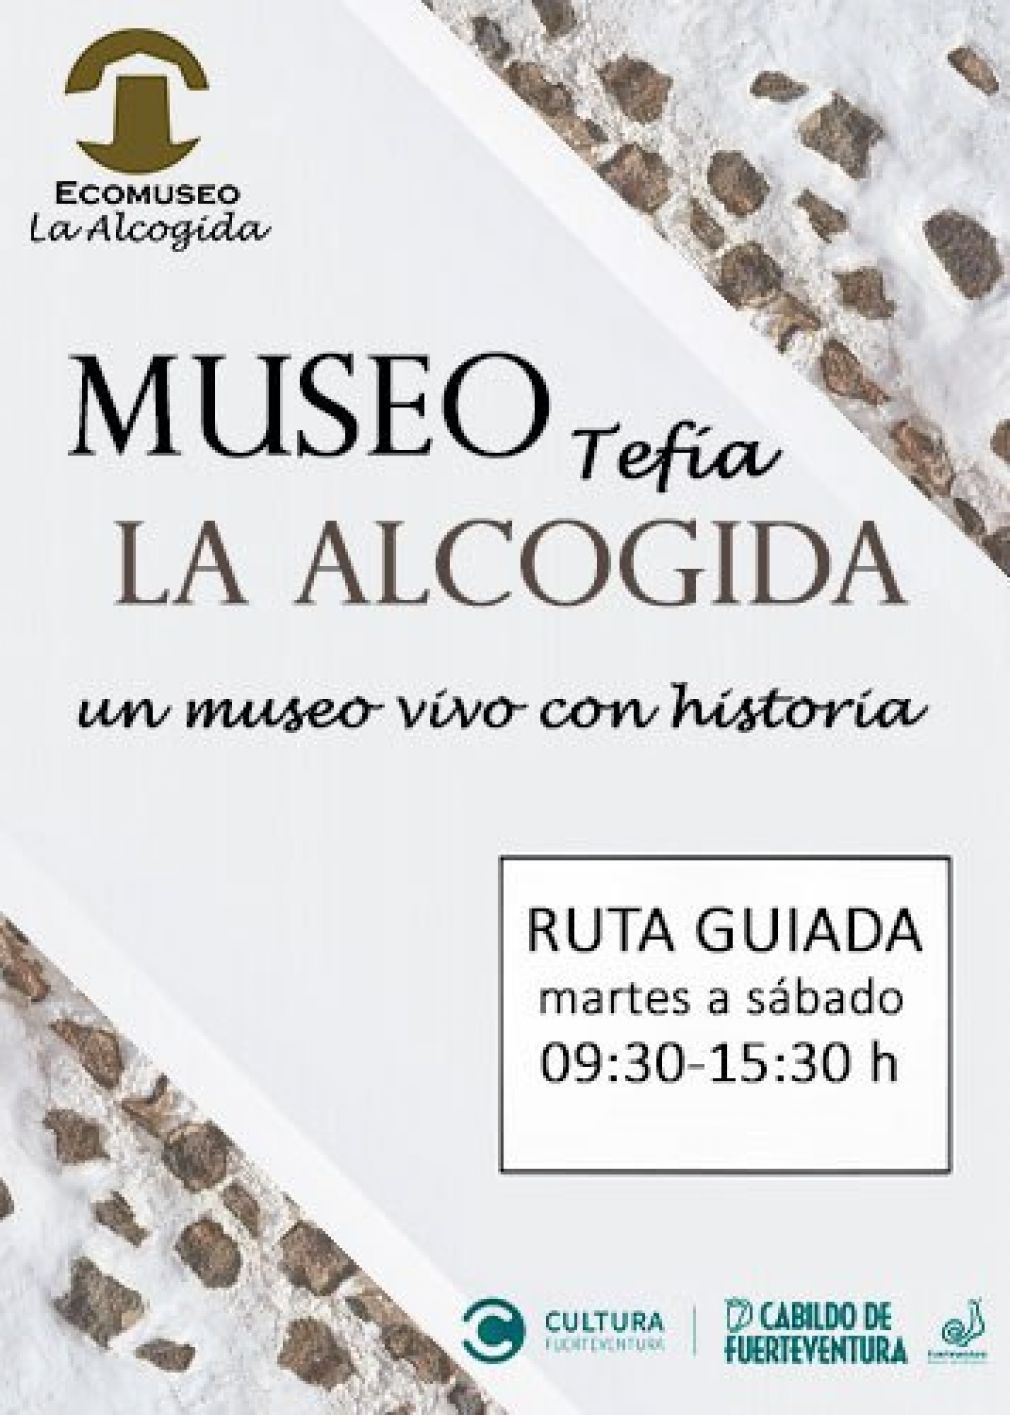 Ecomuseo de La Alcogida